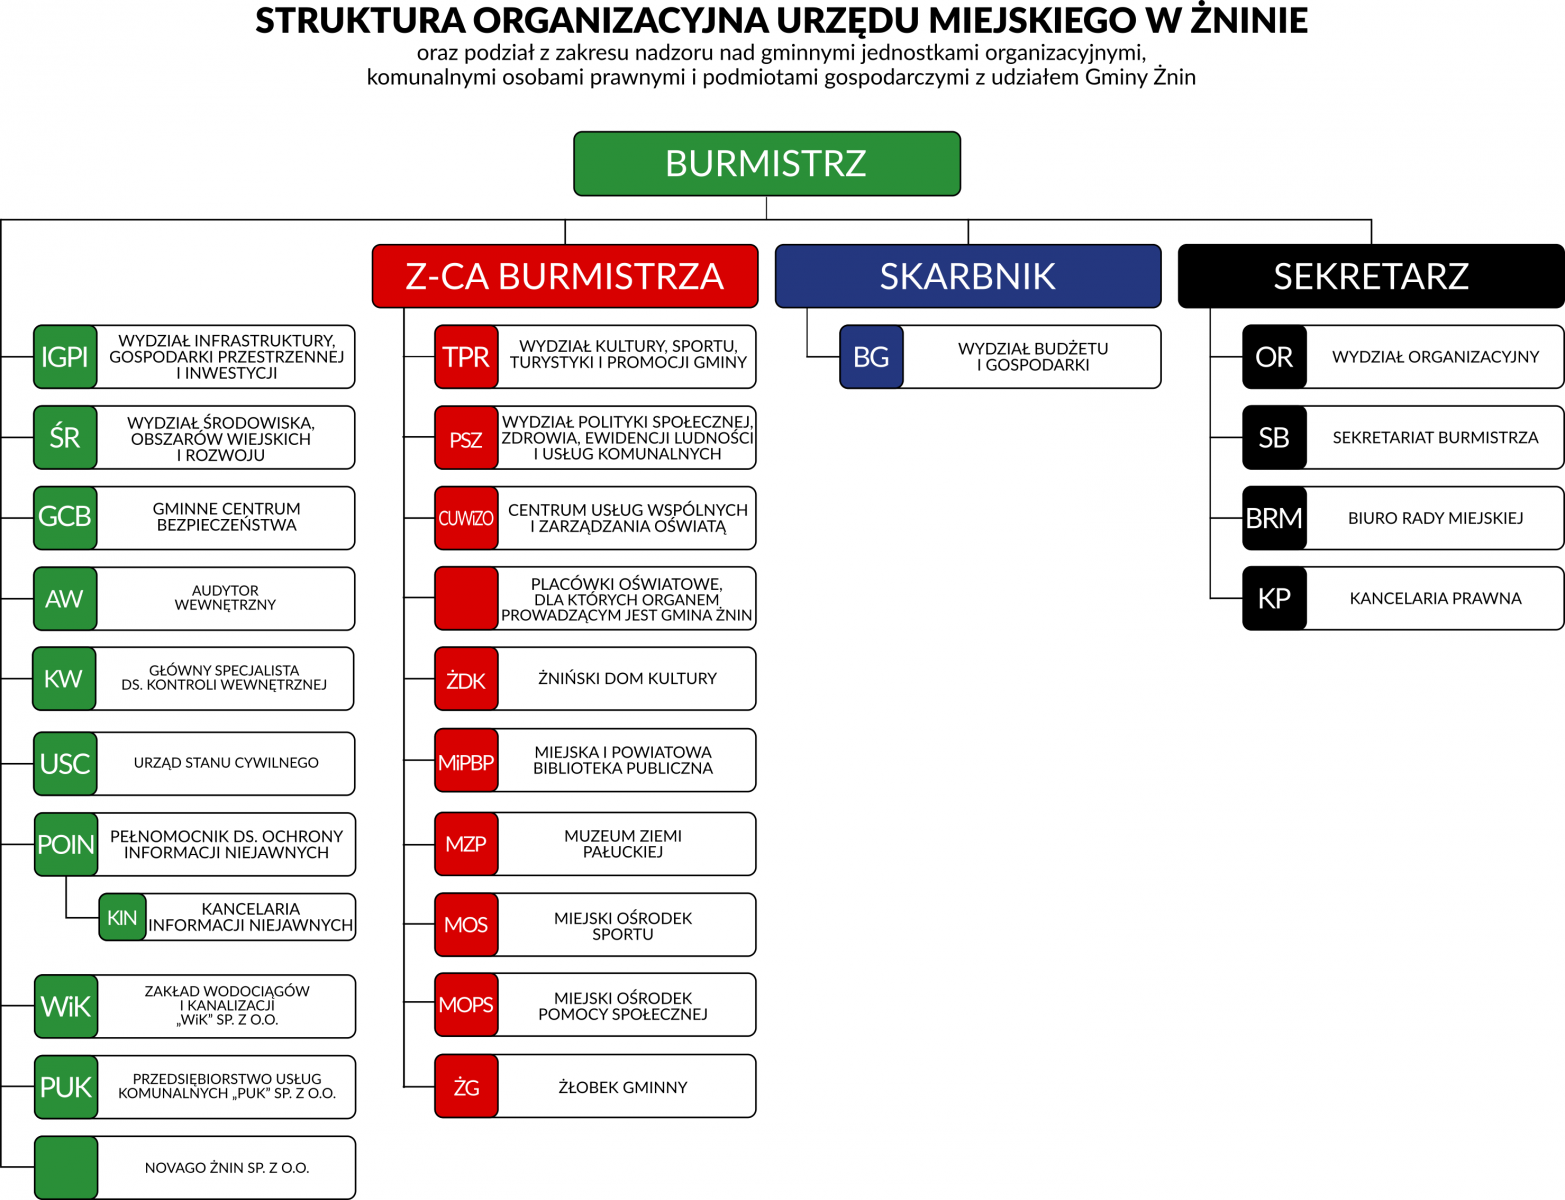 Struktura organizacyjna Urzędu Miejskiego w Żninie oraz podział z zakresu nadzoru nad gminnymi jednostkami organizacyjnymi, komunalnymi osobami prawnymi i podmiotami gospodarczymi z udziałem Gminy Żnin.